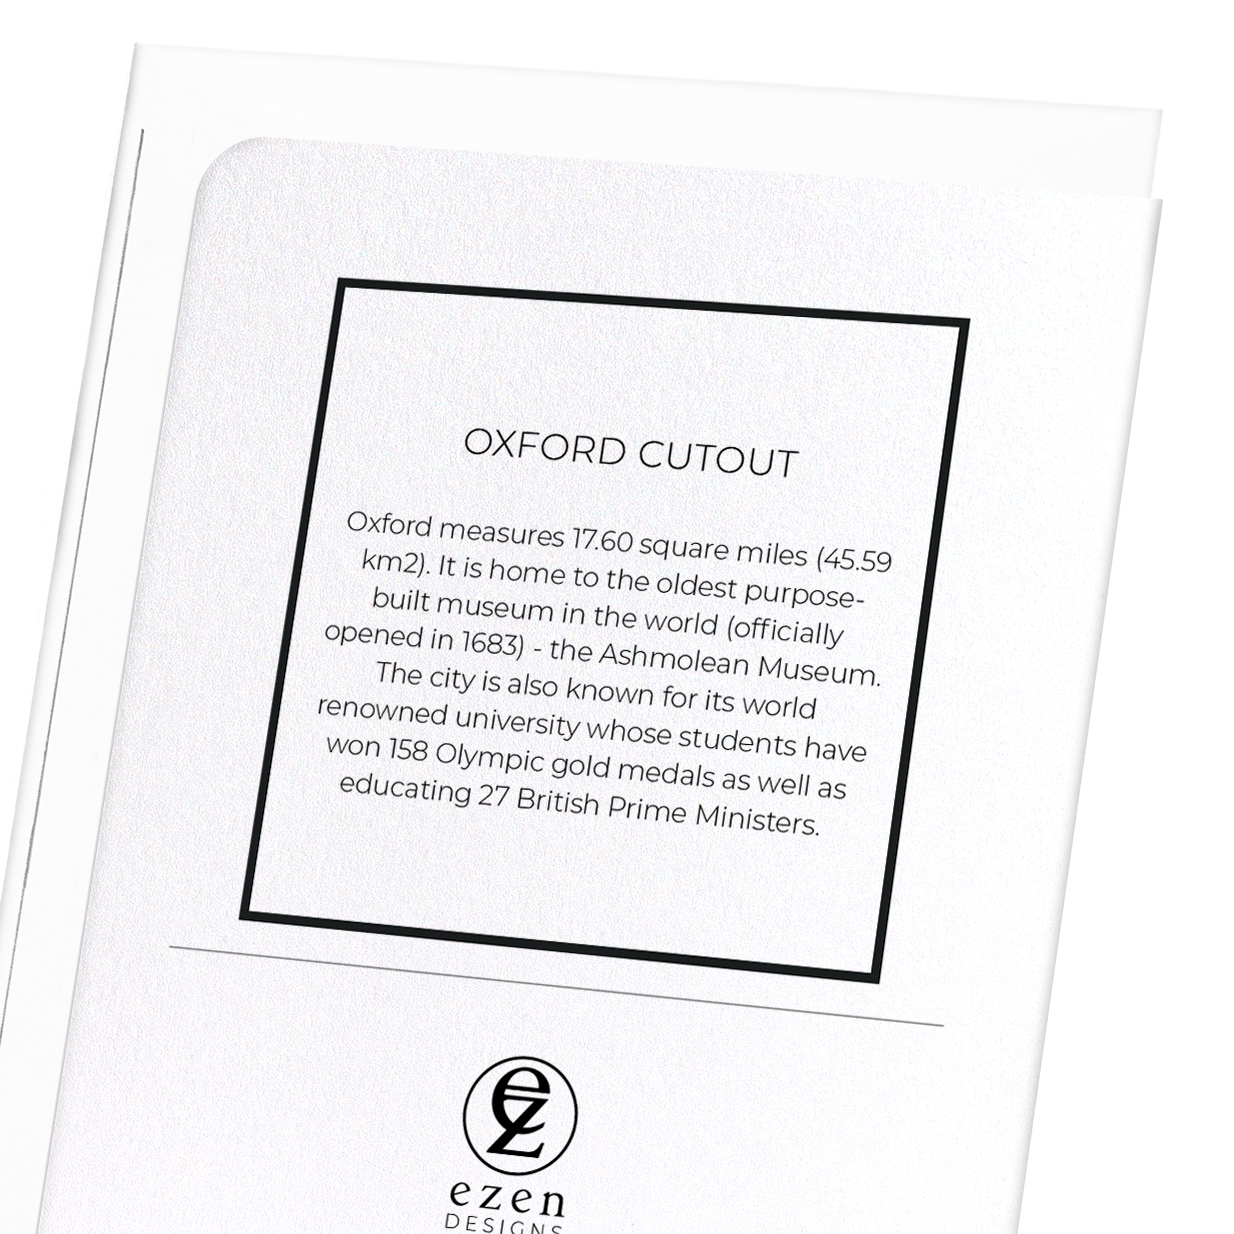 OXFORD CUTOUT